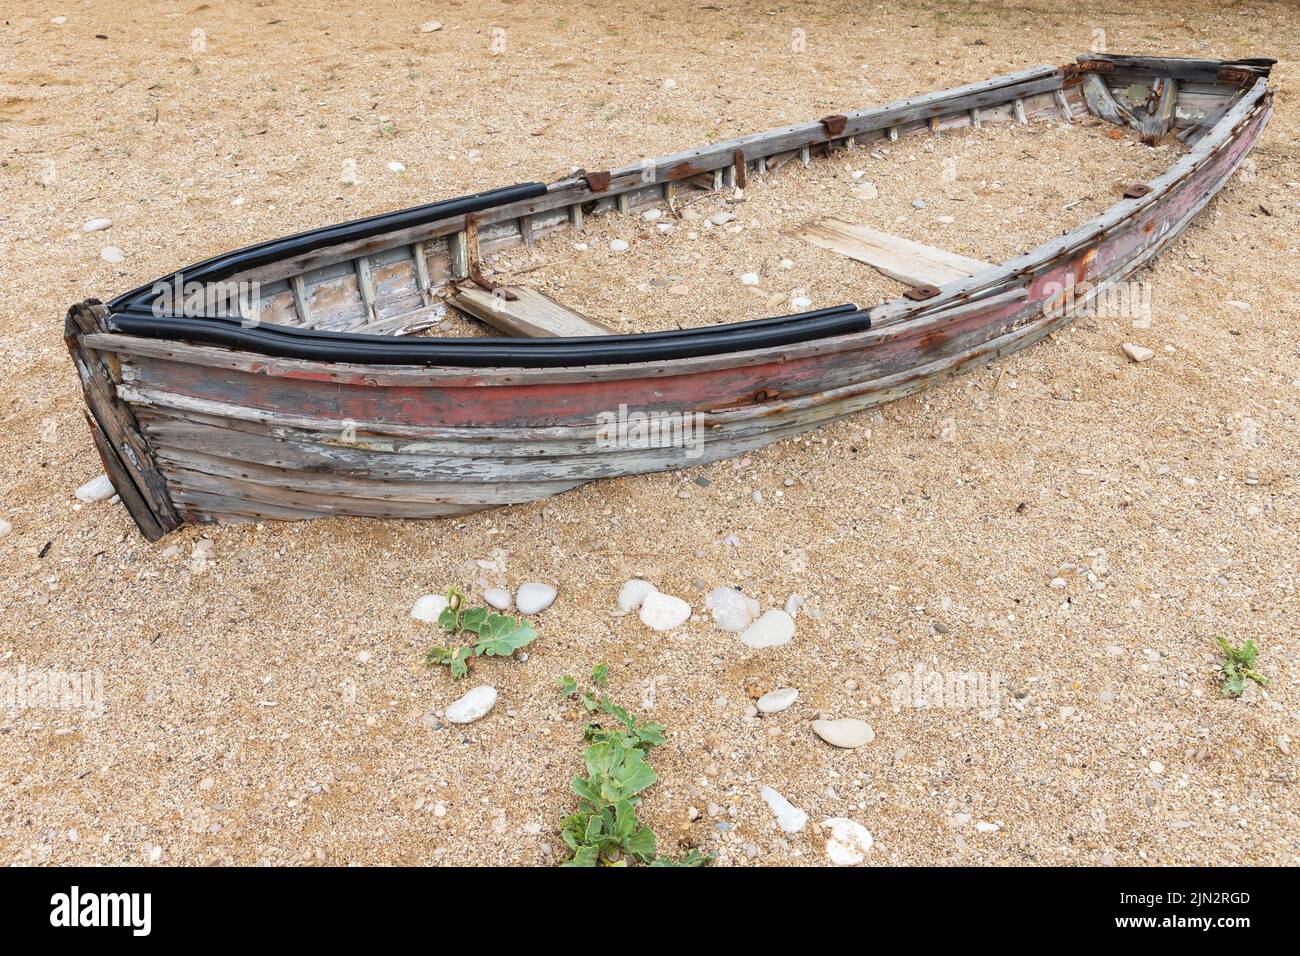 Viejo barco de madera abandonado descansa en una costa arenosa vacía durante el día Foto de stock